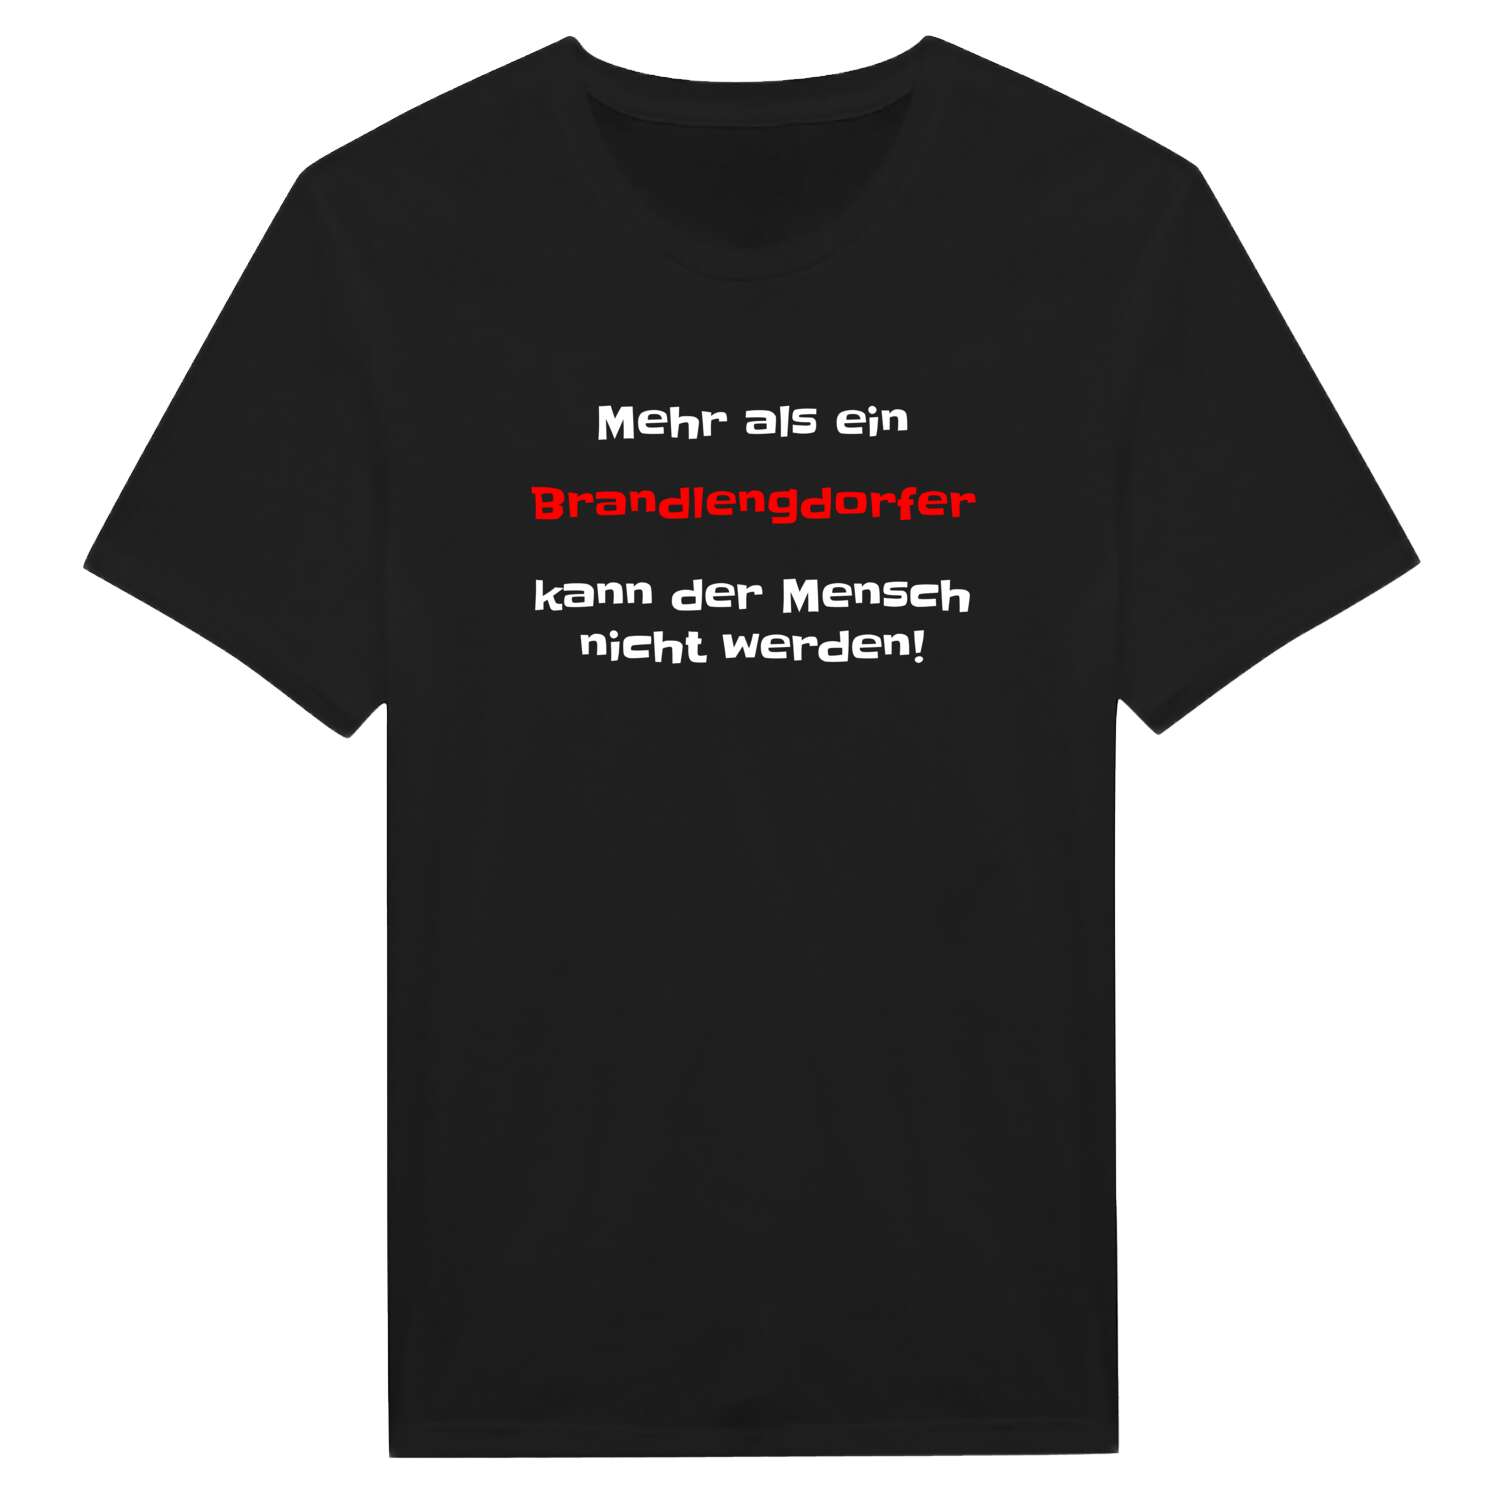 Brandlengdorf T-Shirt »Mehr als ein«